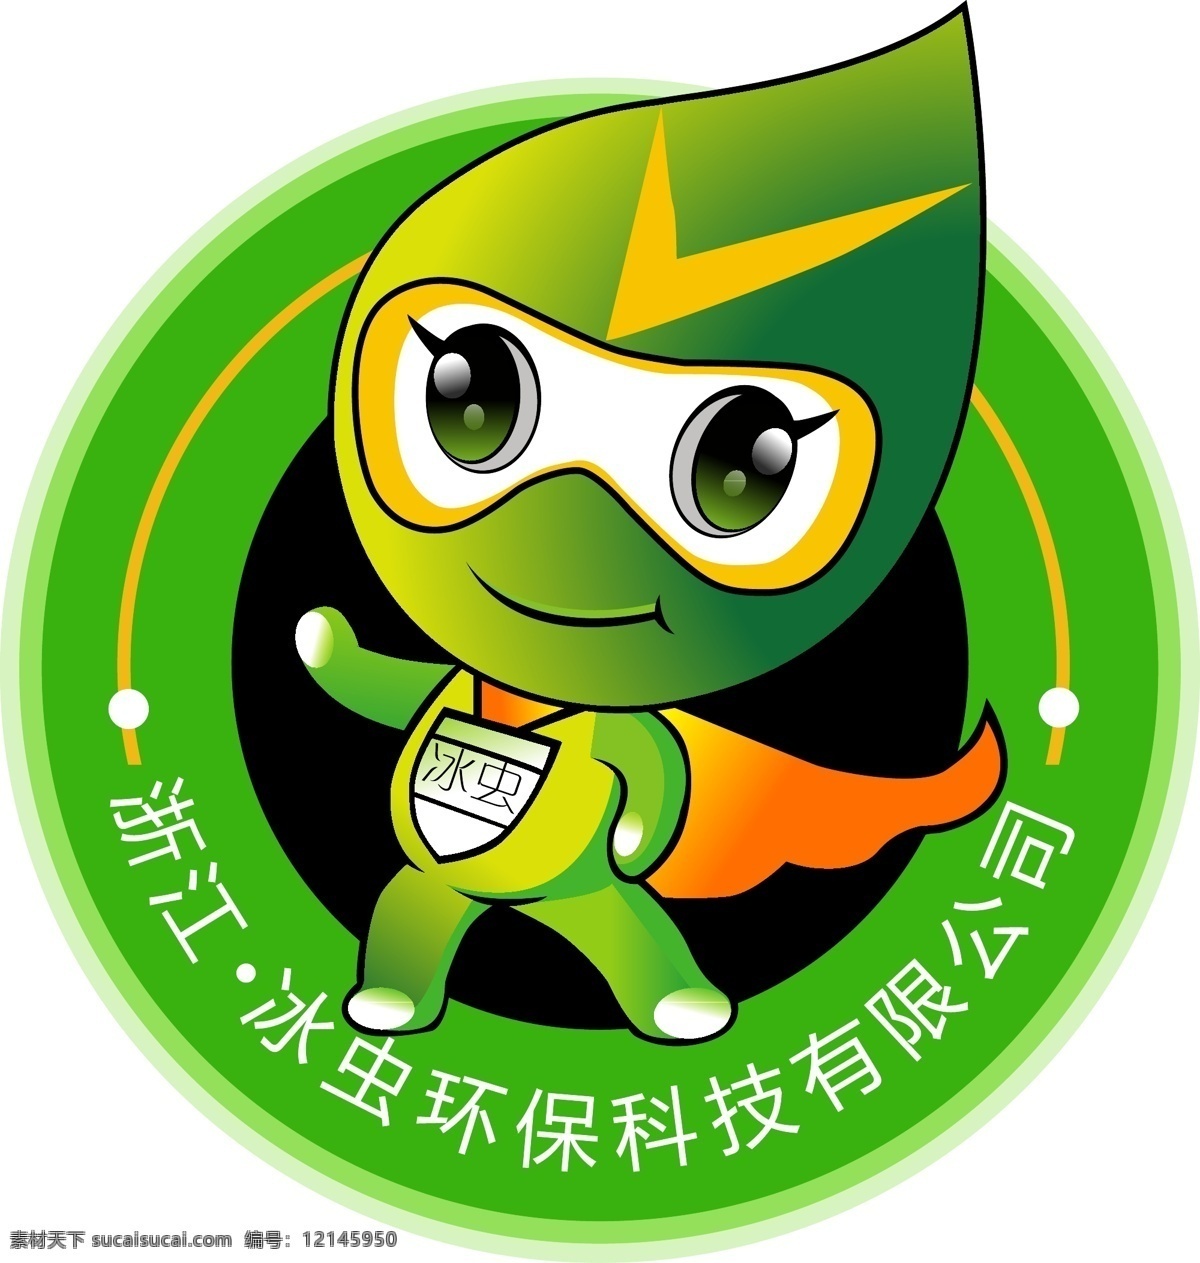 冰 虫 环保科技 有限公司 logo 冰虫 环保 科技 卫士卡通小人 环保公司 logo设计